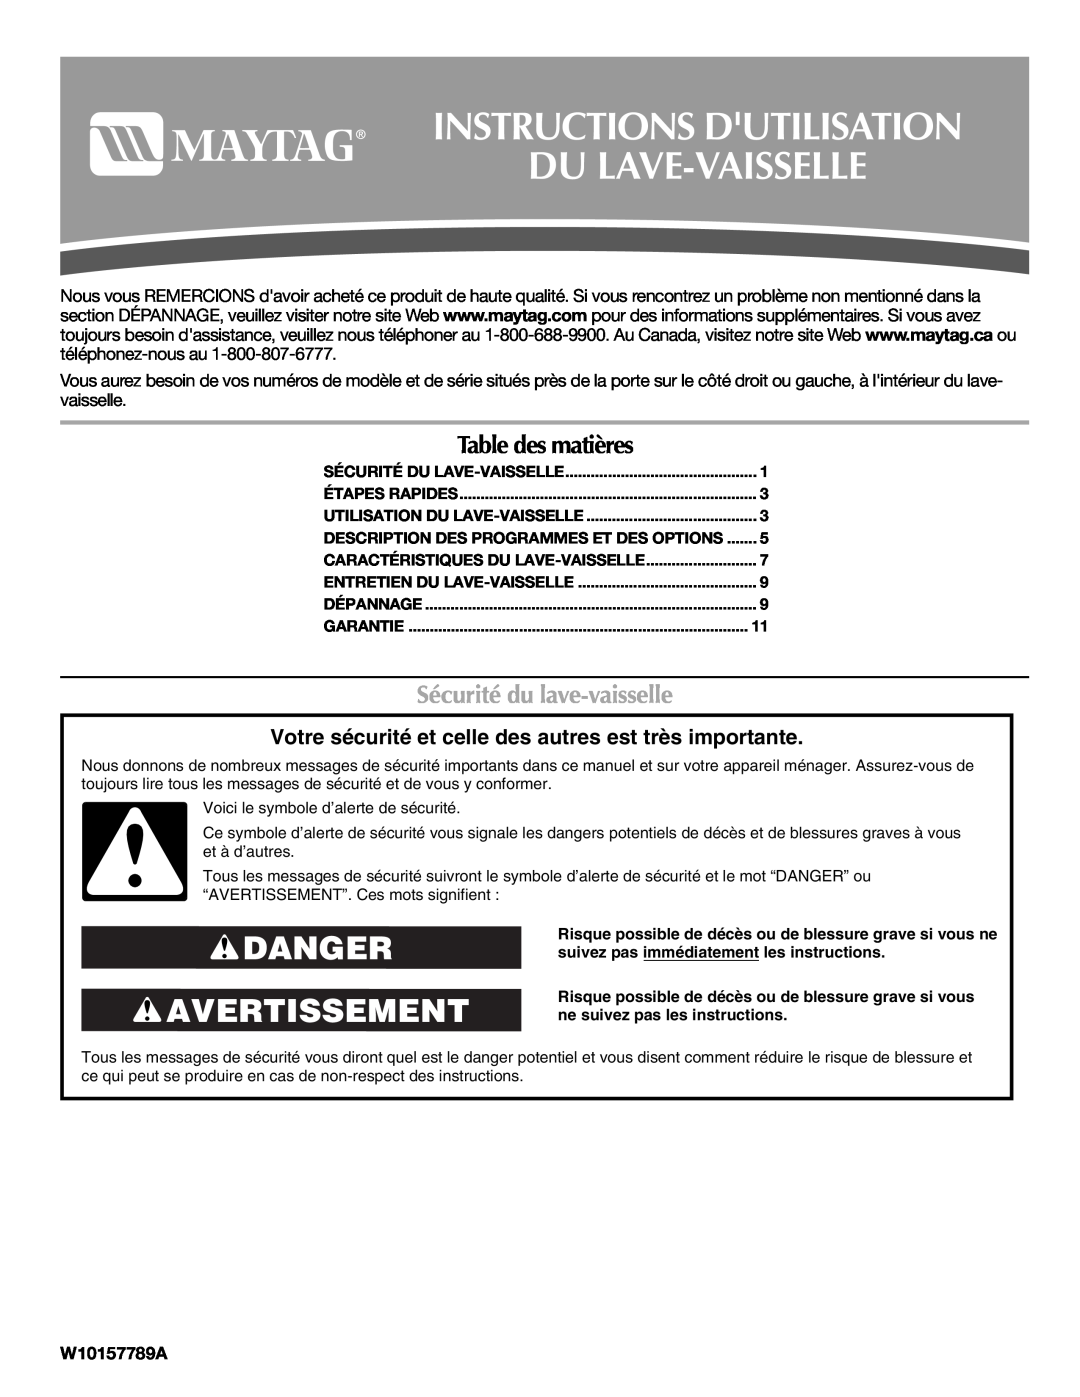 Maytag W10157789A Instructions Dutilisation Du Lave-Vaisselle, Danger Avertissement, Table des matières, Étapes Rapides 